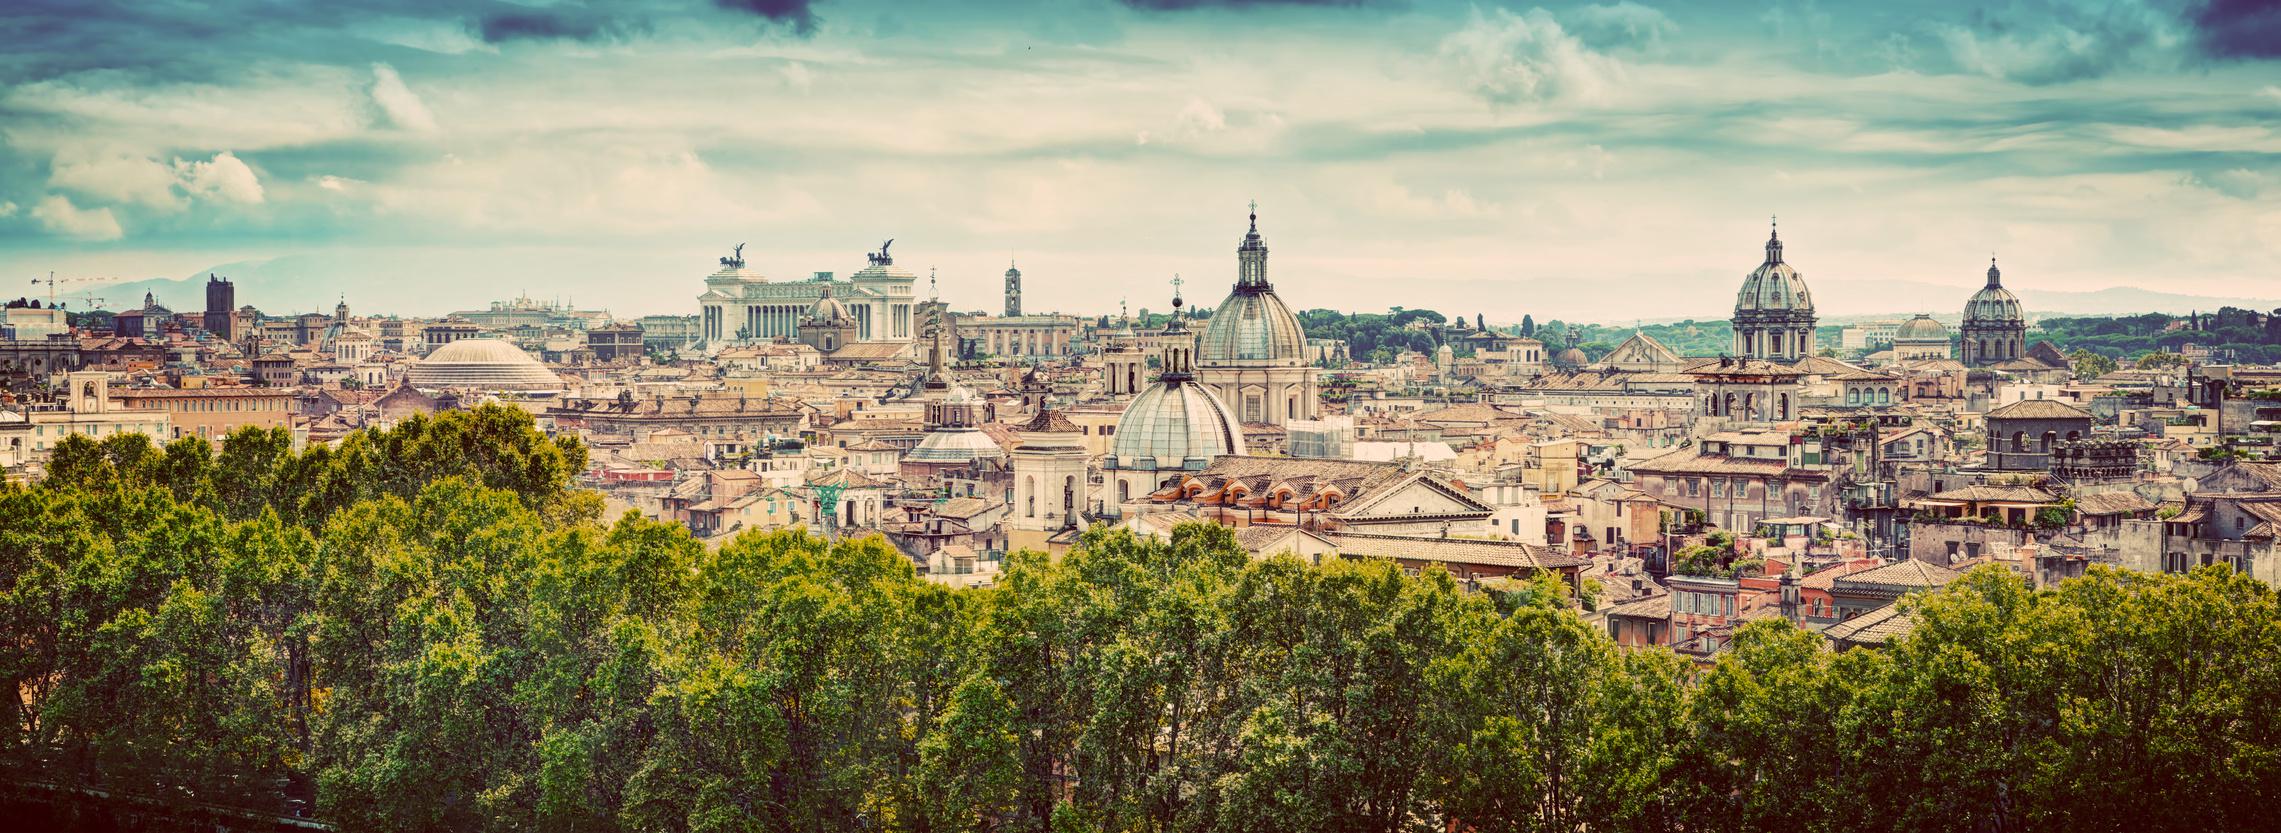 Roma (Fotolia) - Si scrive Roma si legge Amor. Che altro dire? Un week end nella Città Eterna sarà certamente un regalo indimenticabile.